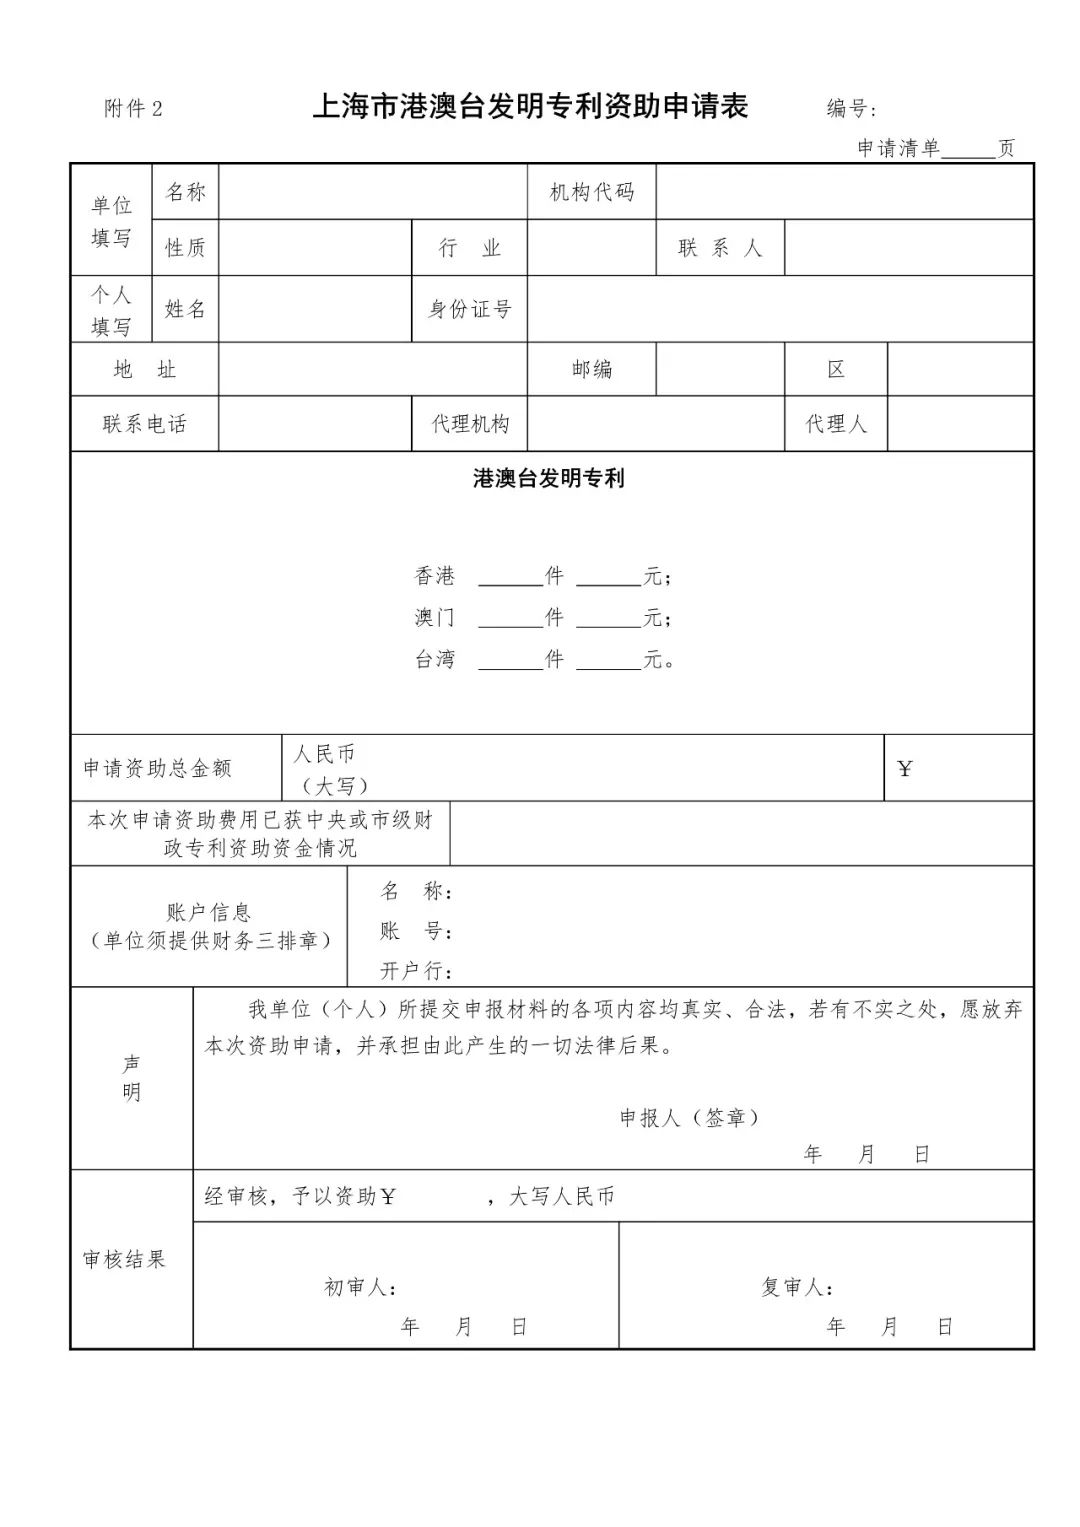 《上海市专利一般资助指南》全文（2019.1.1施行）